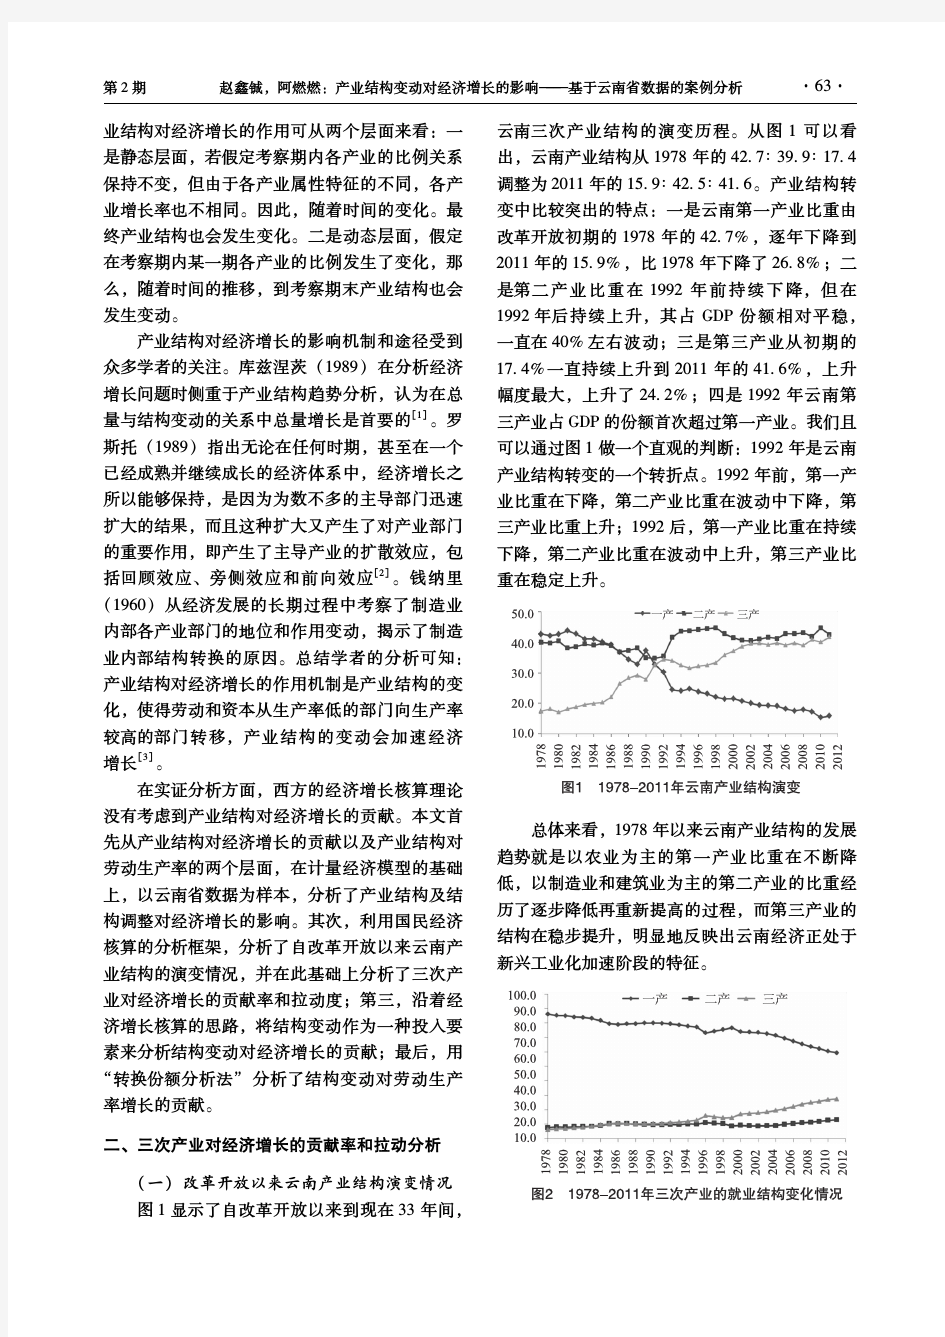 产业结构变动对经济增长的影响--基于云南省数据的案例分析